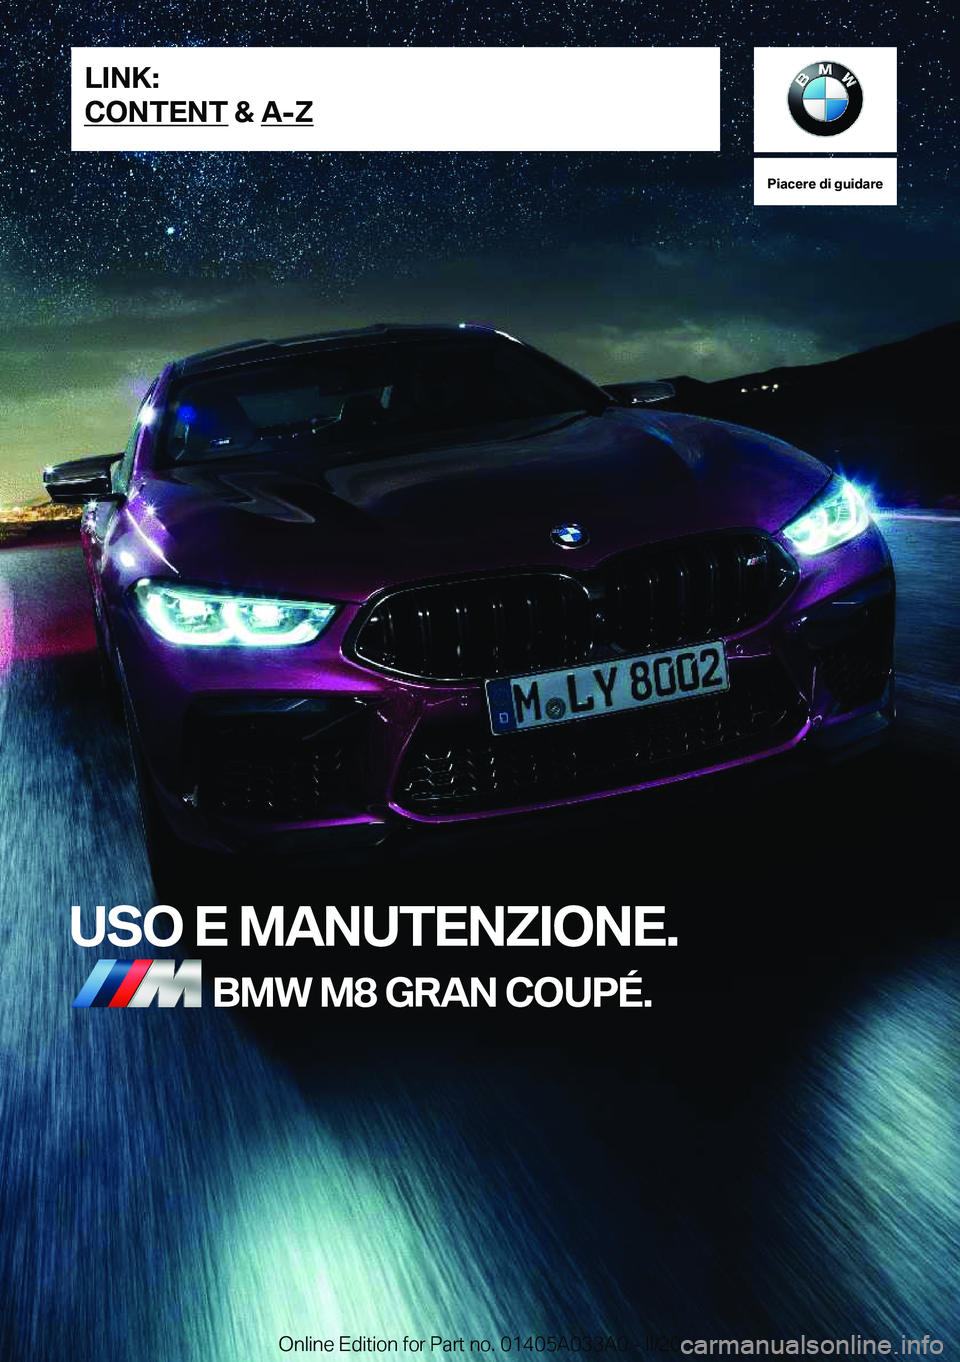 BMW M8 GRAN COUPE 2020  Libretti Di Uso E manutenzione (in Italian) �P�i�a�c�e�r�e��d�i��g�u�i�d�a�r�e
�U�S�O��E��M�A�N�U�T�E�N�Z�I�O�N�E�.�B�M�W��M�8��G�R�A�N��C�O�U�P�